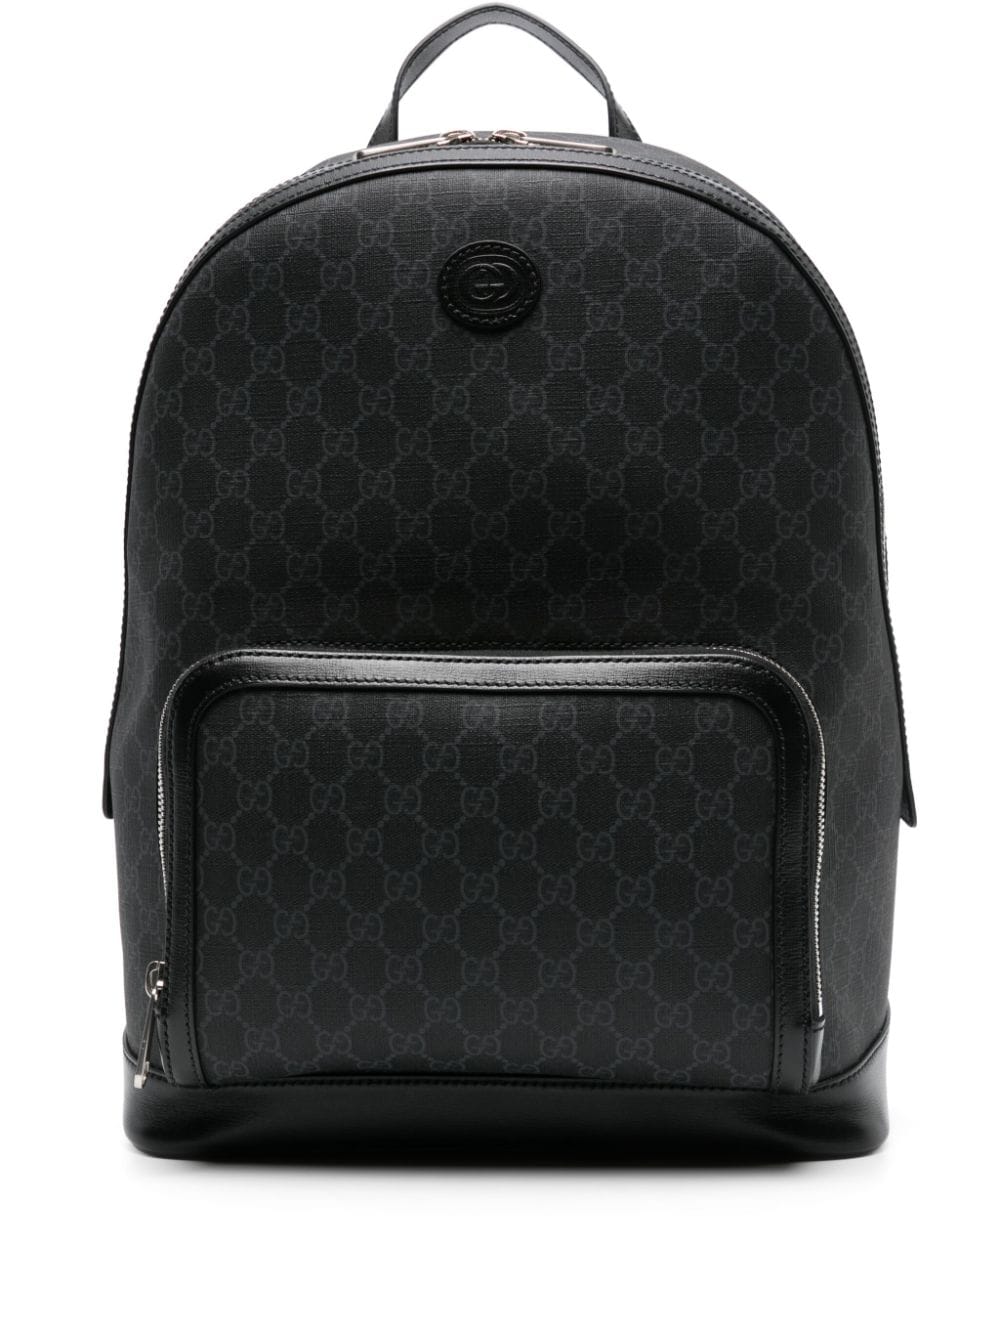 Gucci GG Supreme canvas backpack - Black von Gucci